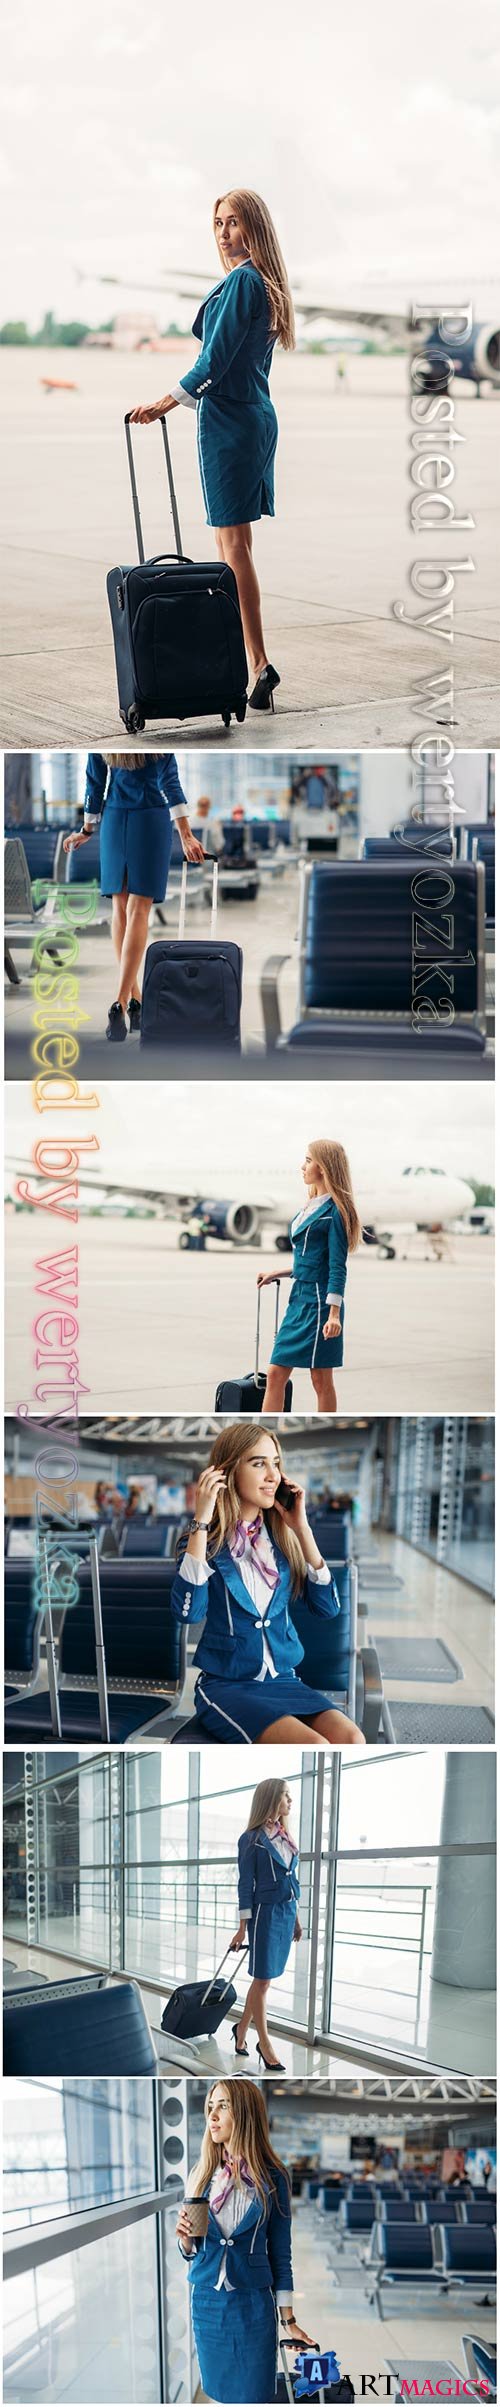 Stewardess beautiful stock photo